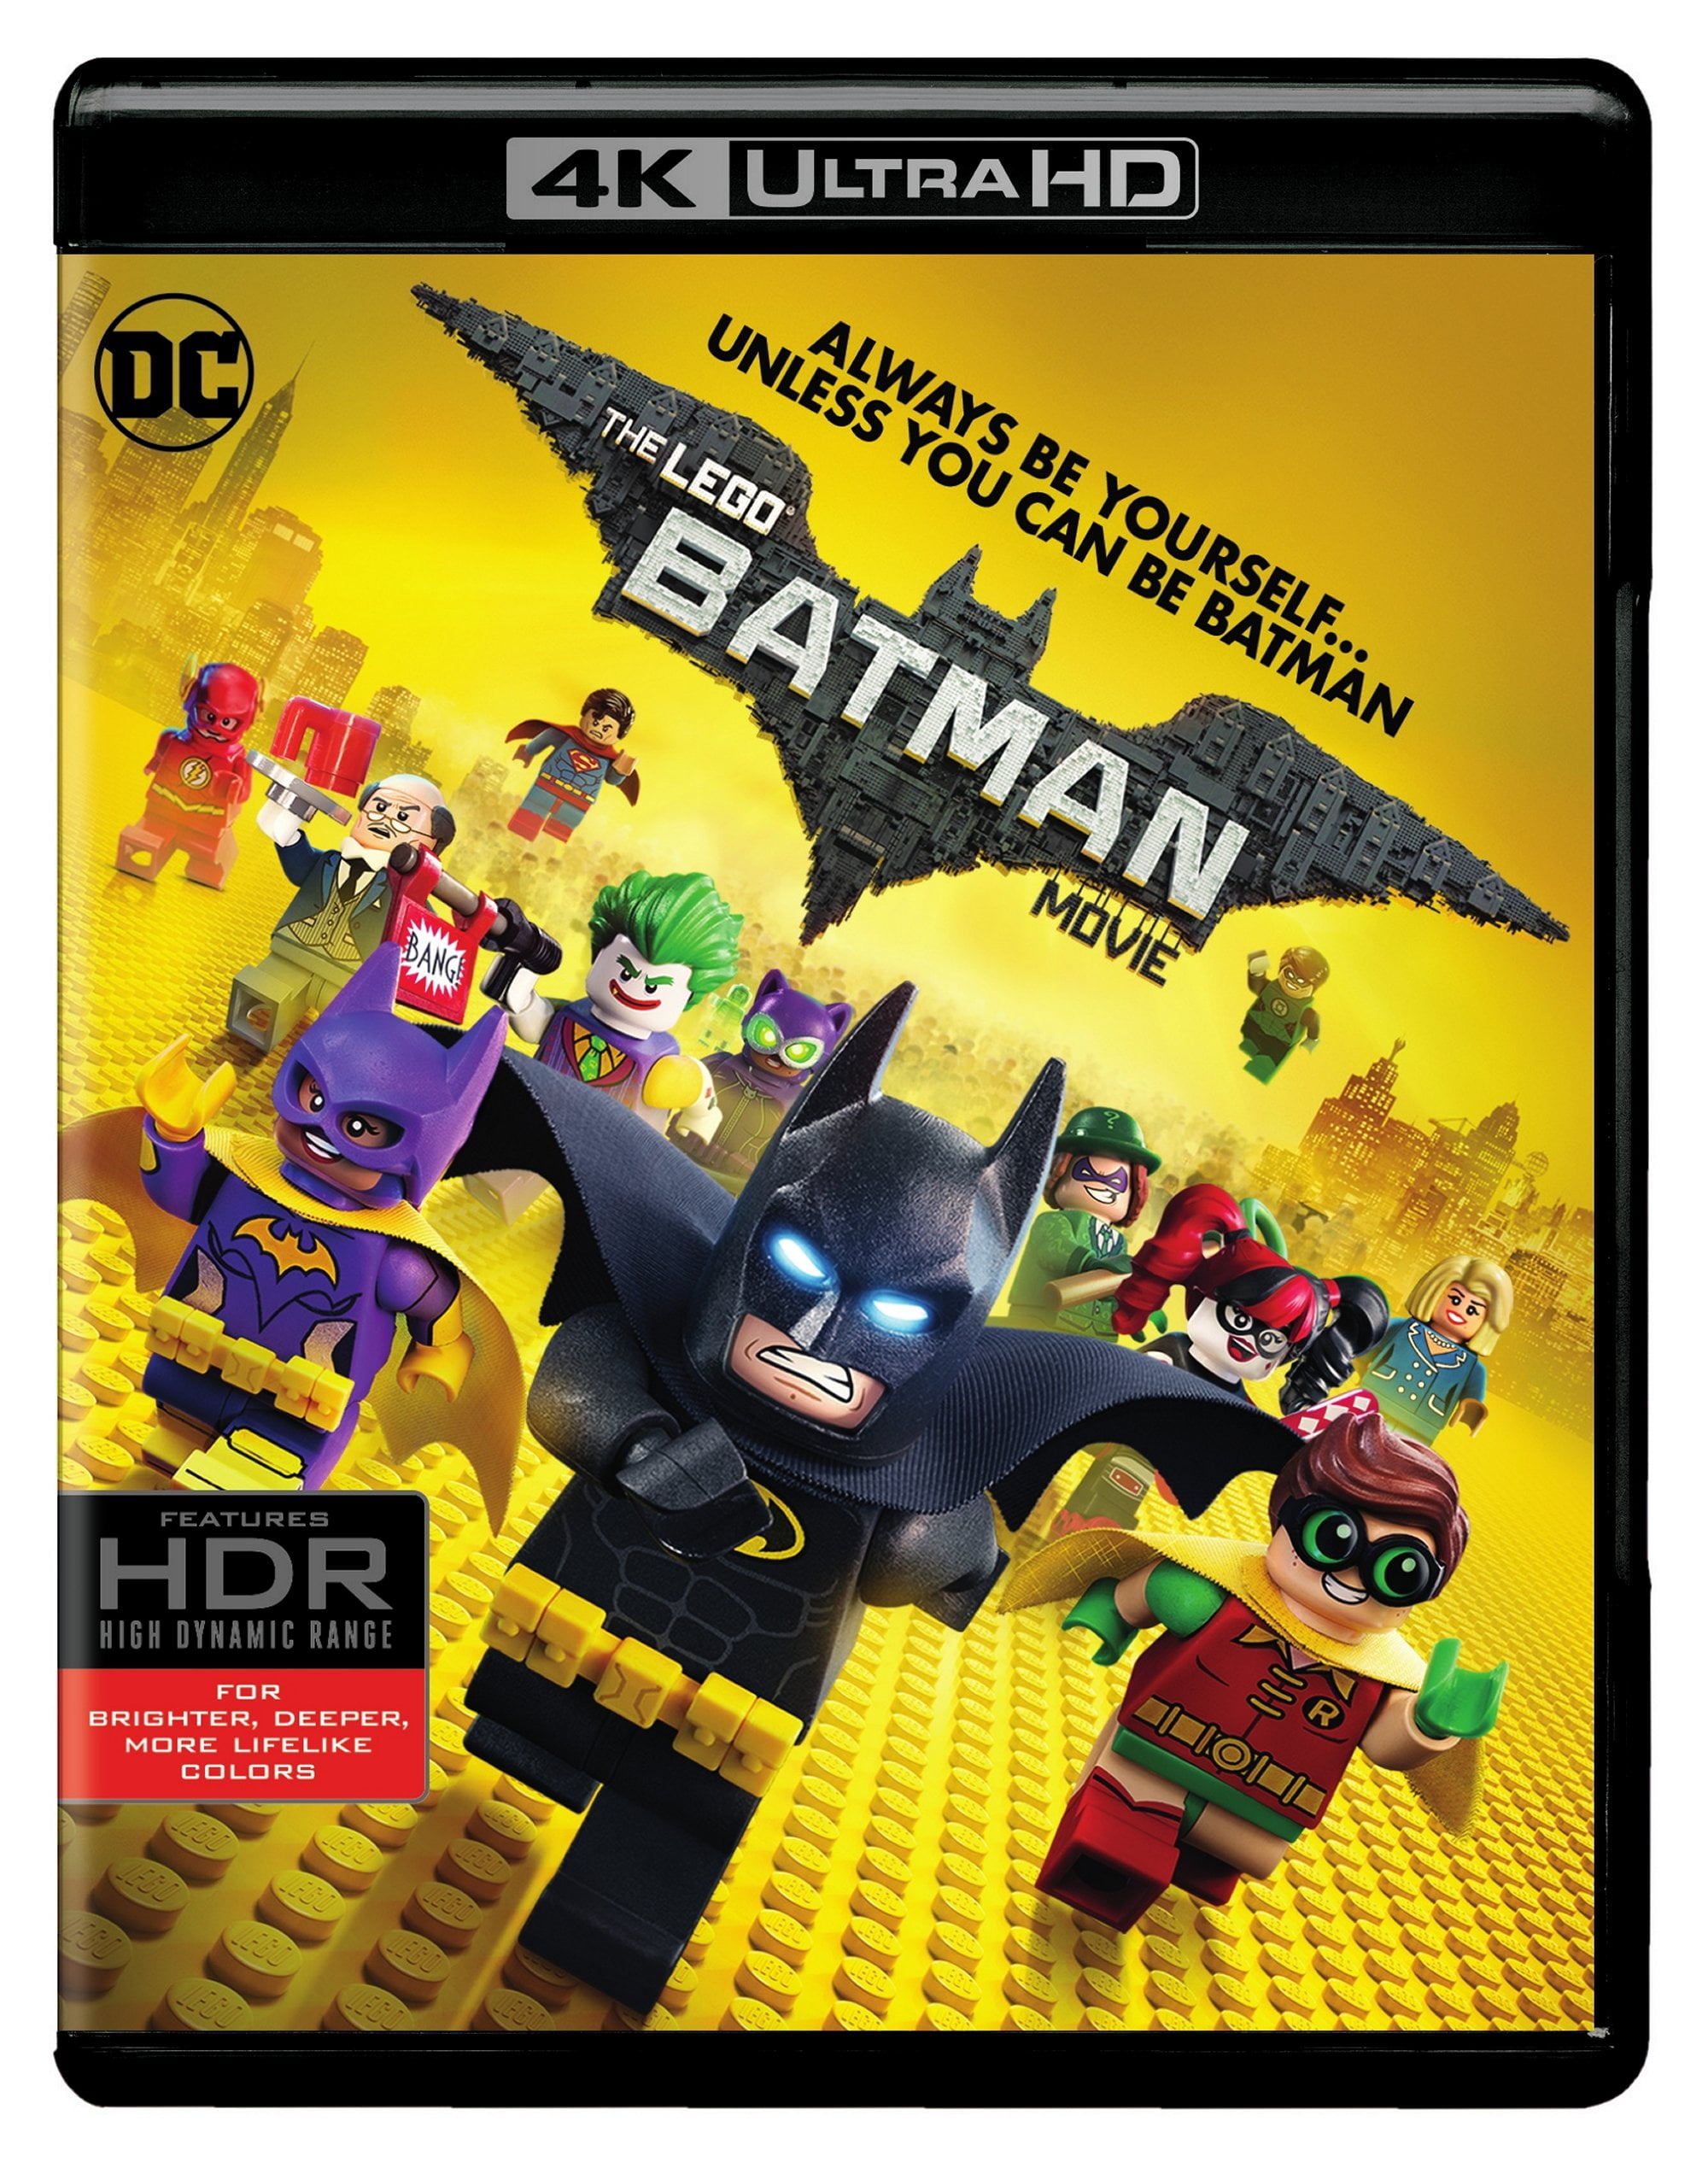  Lego Batman Movie, The (Blu-ray) (BD) : Will Arnett